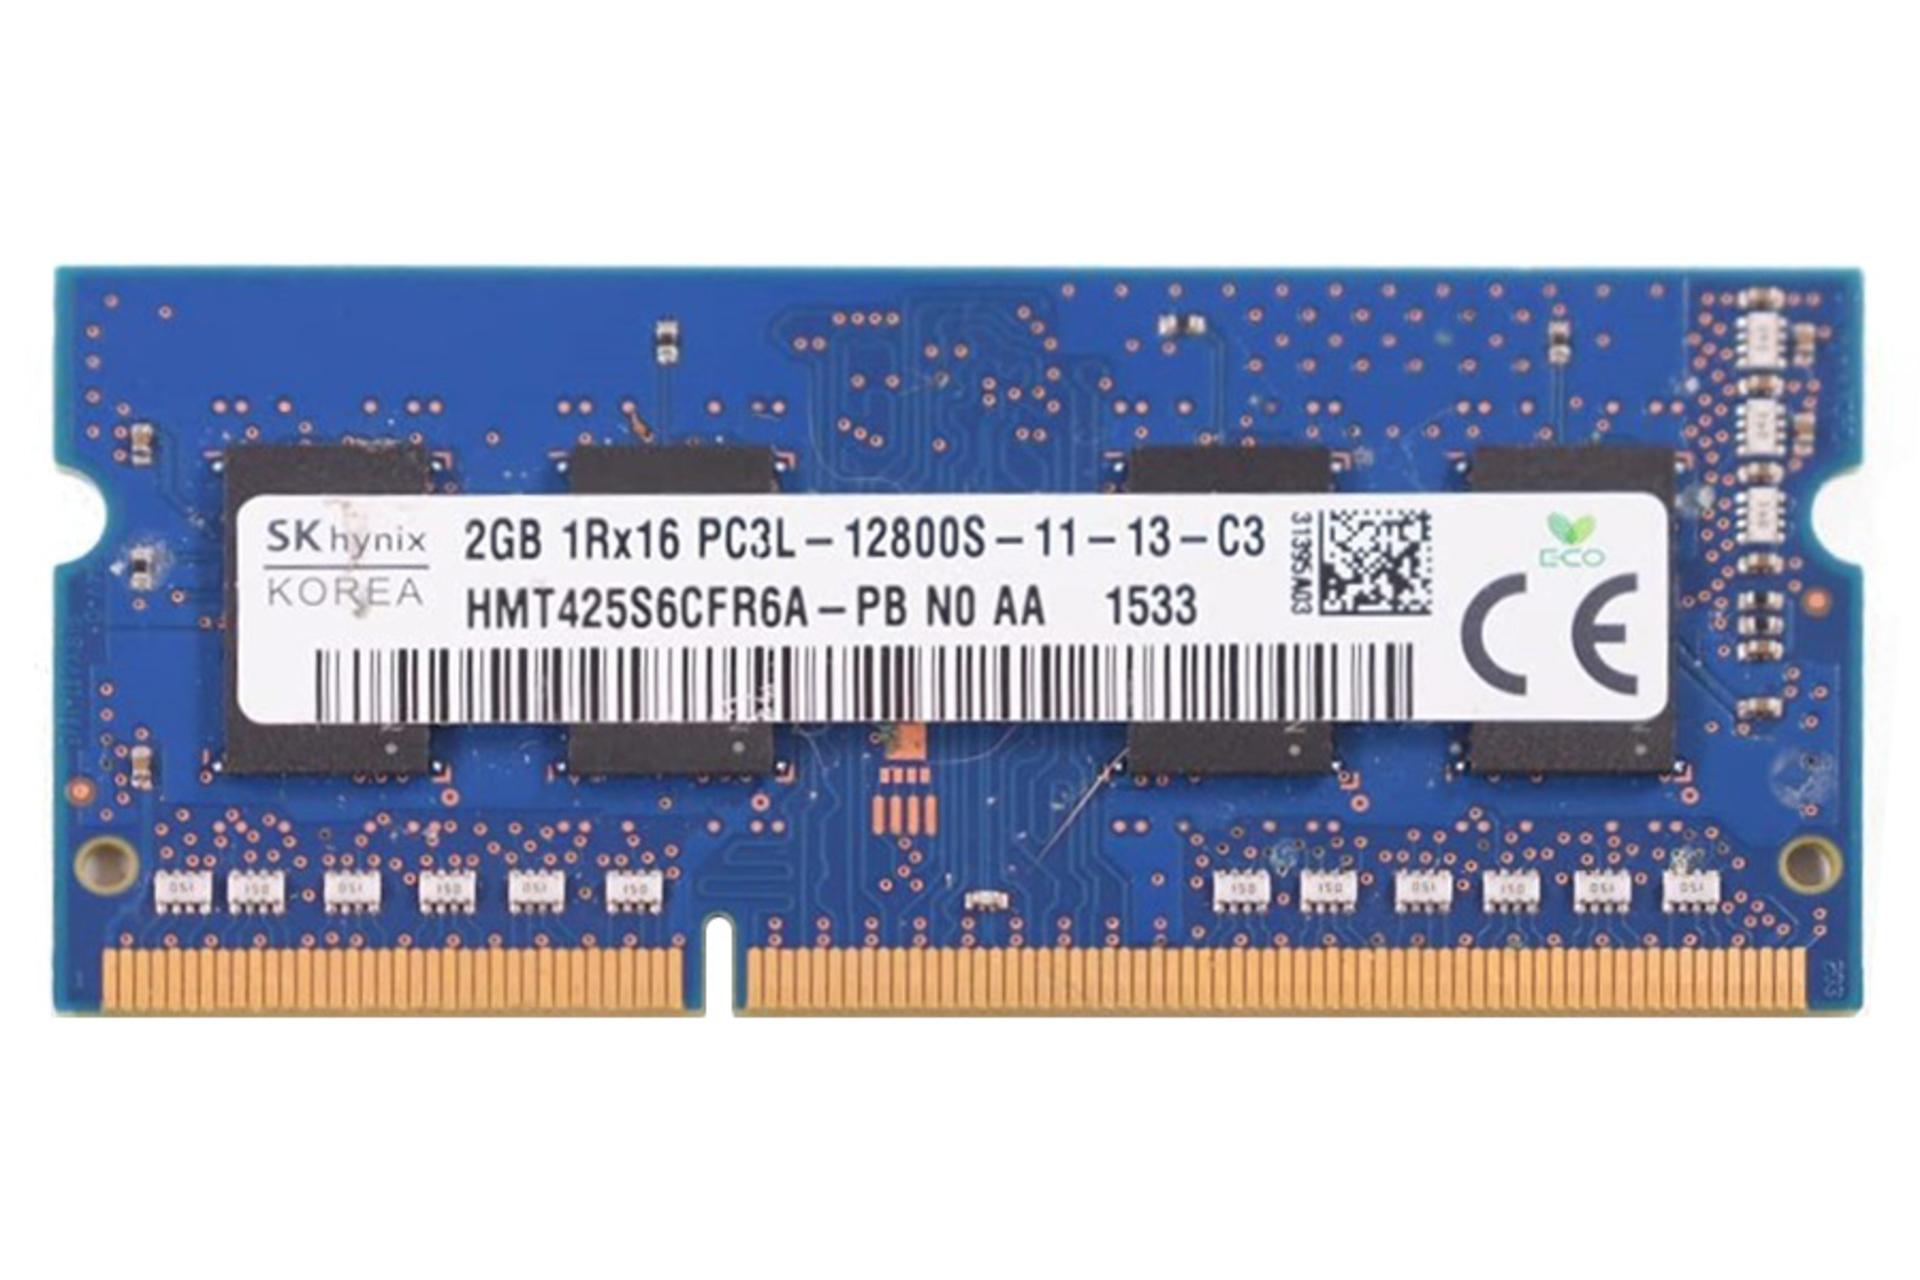 رم اس کی هاینیکس SK Hynix HMT425S6CFR6A-PB 2GB DDR3-1600 CL11